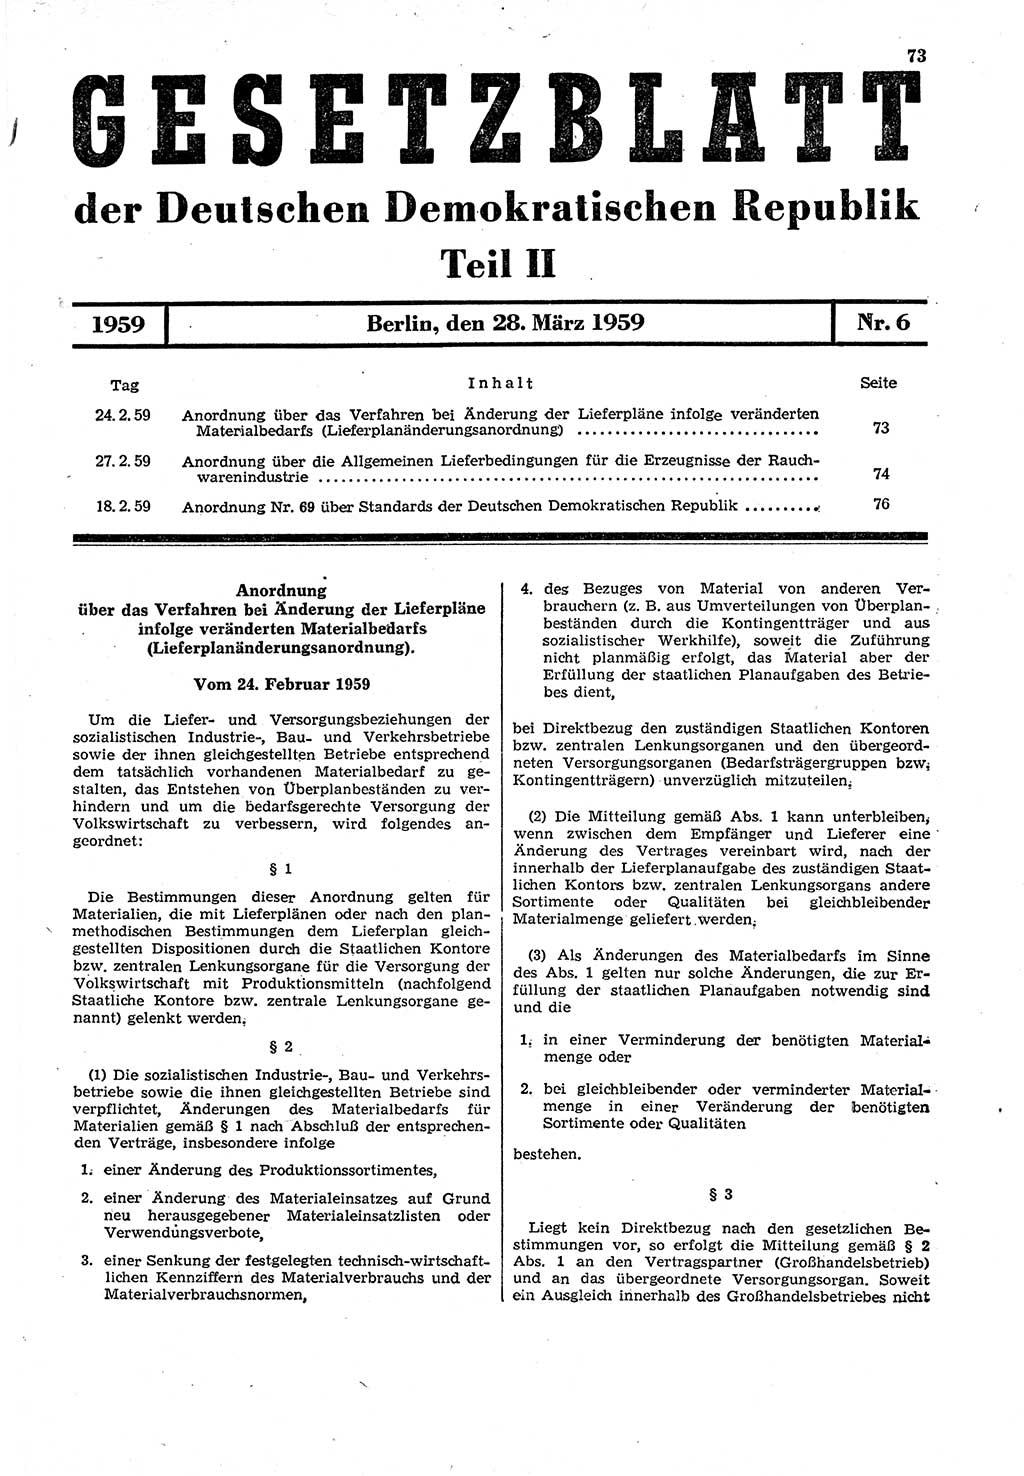 Gesetzblatt (GBl.) der Deutschen Demokratischen Republik (DDR) Teil ⅠⅠ 1959, Seite 73 (GBl. DDR ⅠⅠ 1959, S. 73)